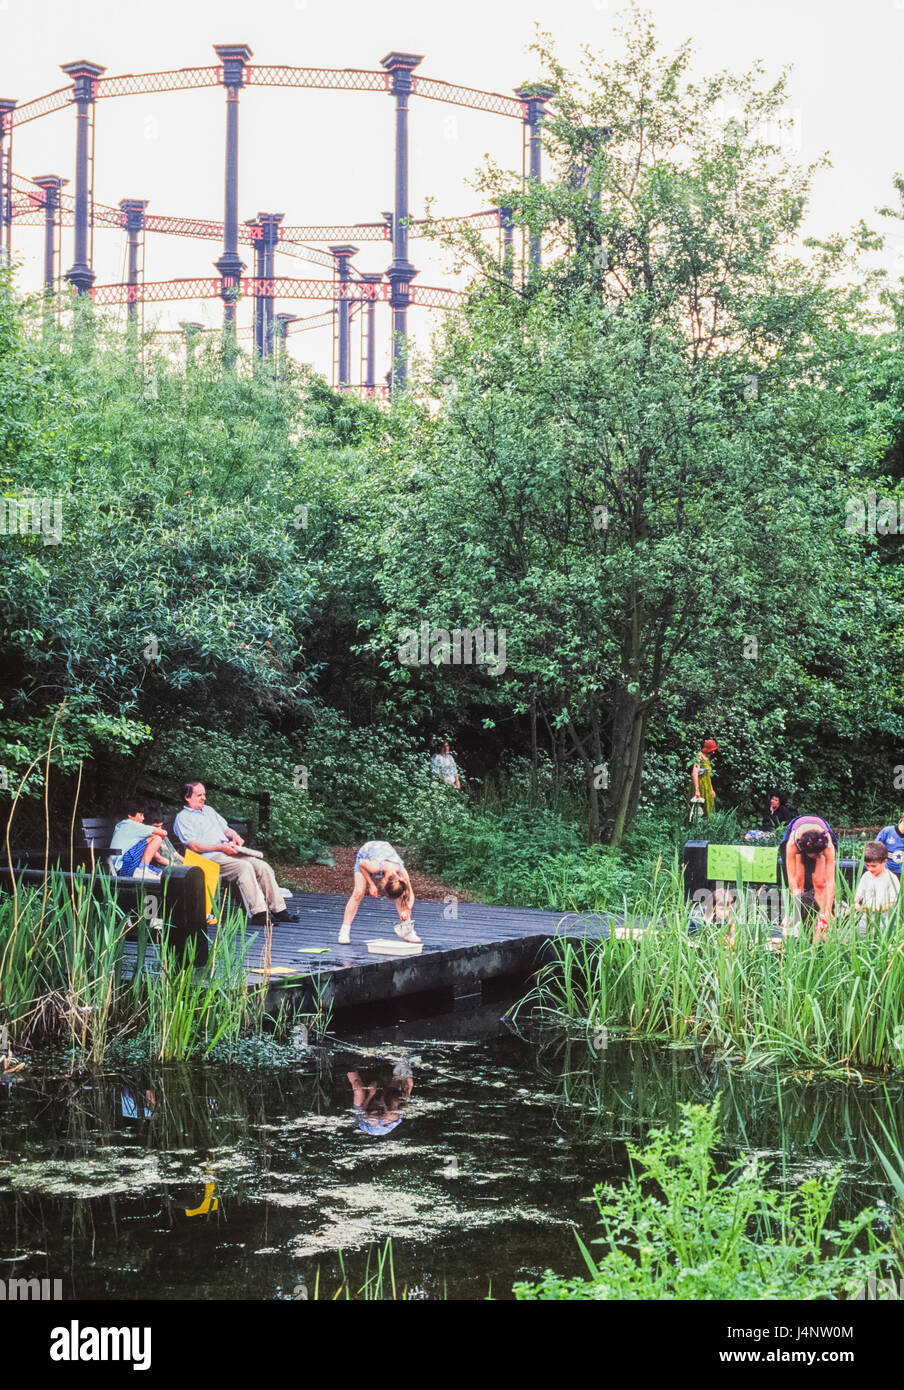 Parc naturel de Camley Street avec gasometer, bassin de visiteurs en plein été, London Wildlife Trust, Camden, Londres, Royaume-Uni Banque D'Images